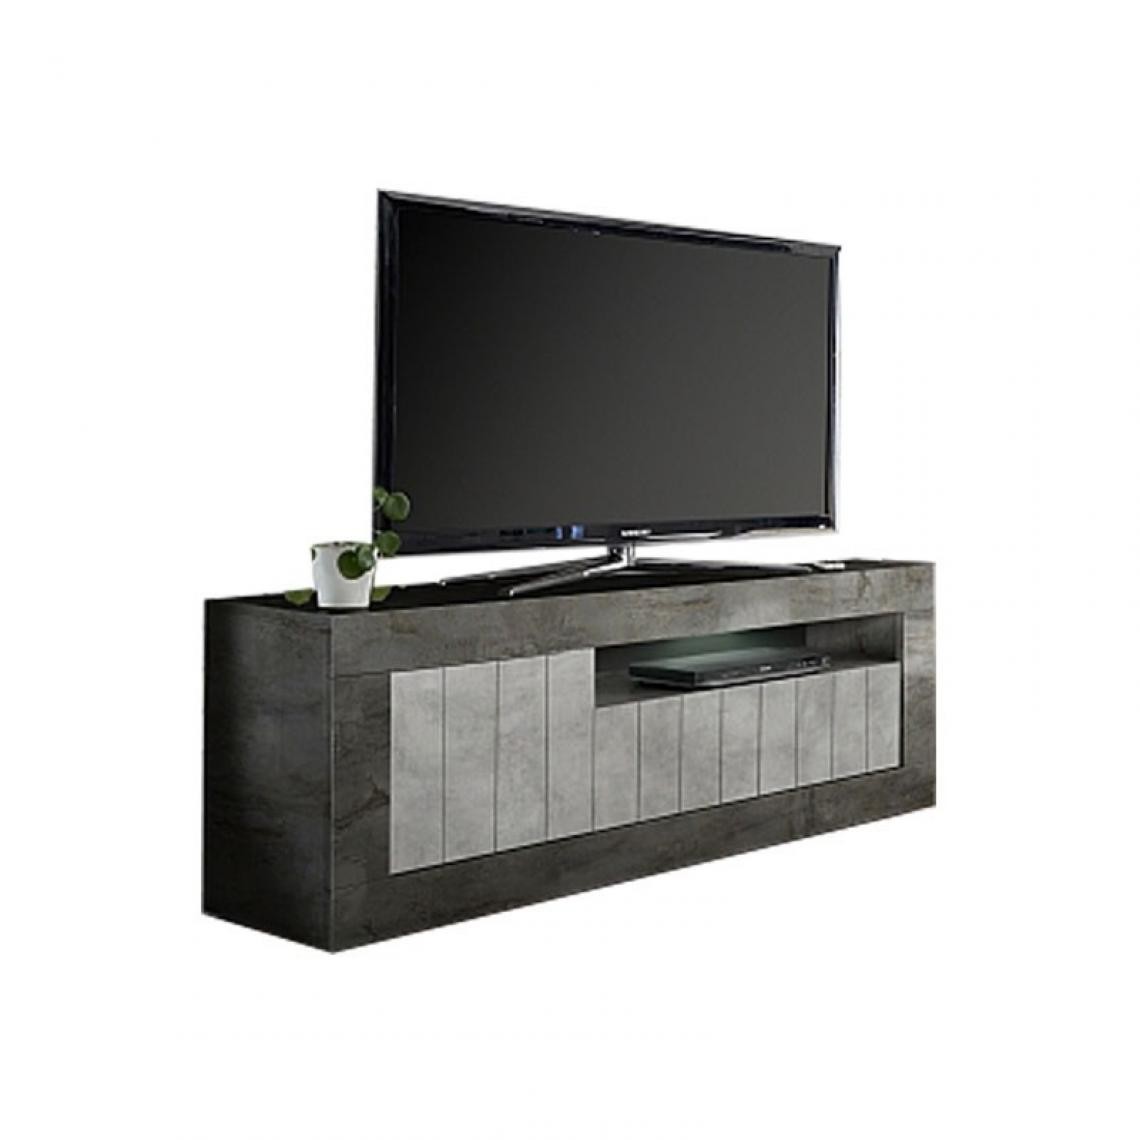 Webmarketpoint - Meuble TV moderne avec 3 portes battantes en structure oxyde finition ciment 138x42xh.56 cm - Meubles TV, Hi-Fi